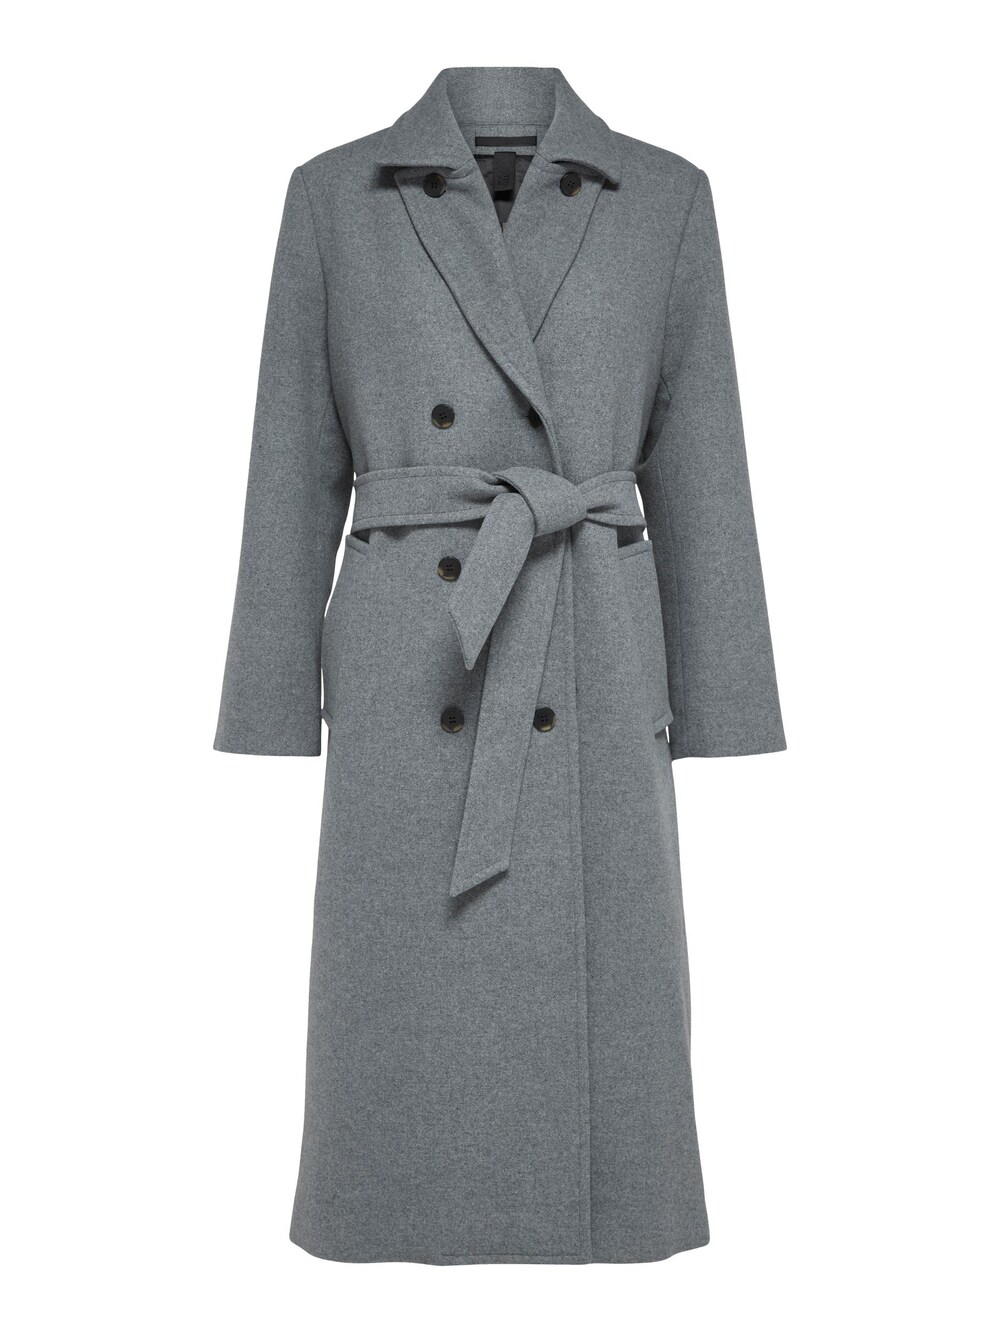 Межсезонное пальто Selected Milo, пестрый серый межсезонное пальто edited ekaterina пестрый серый